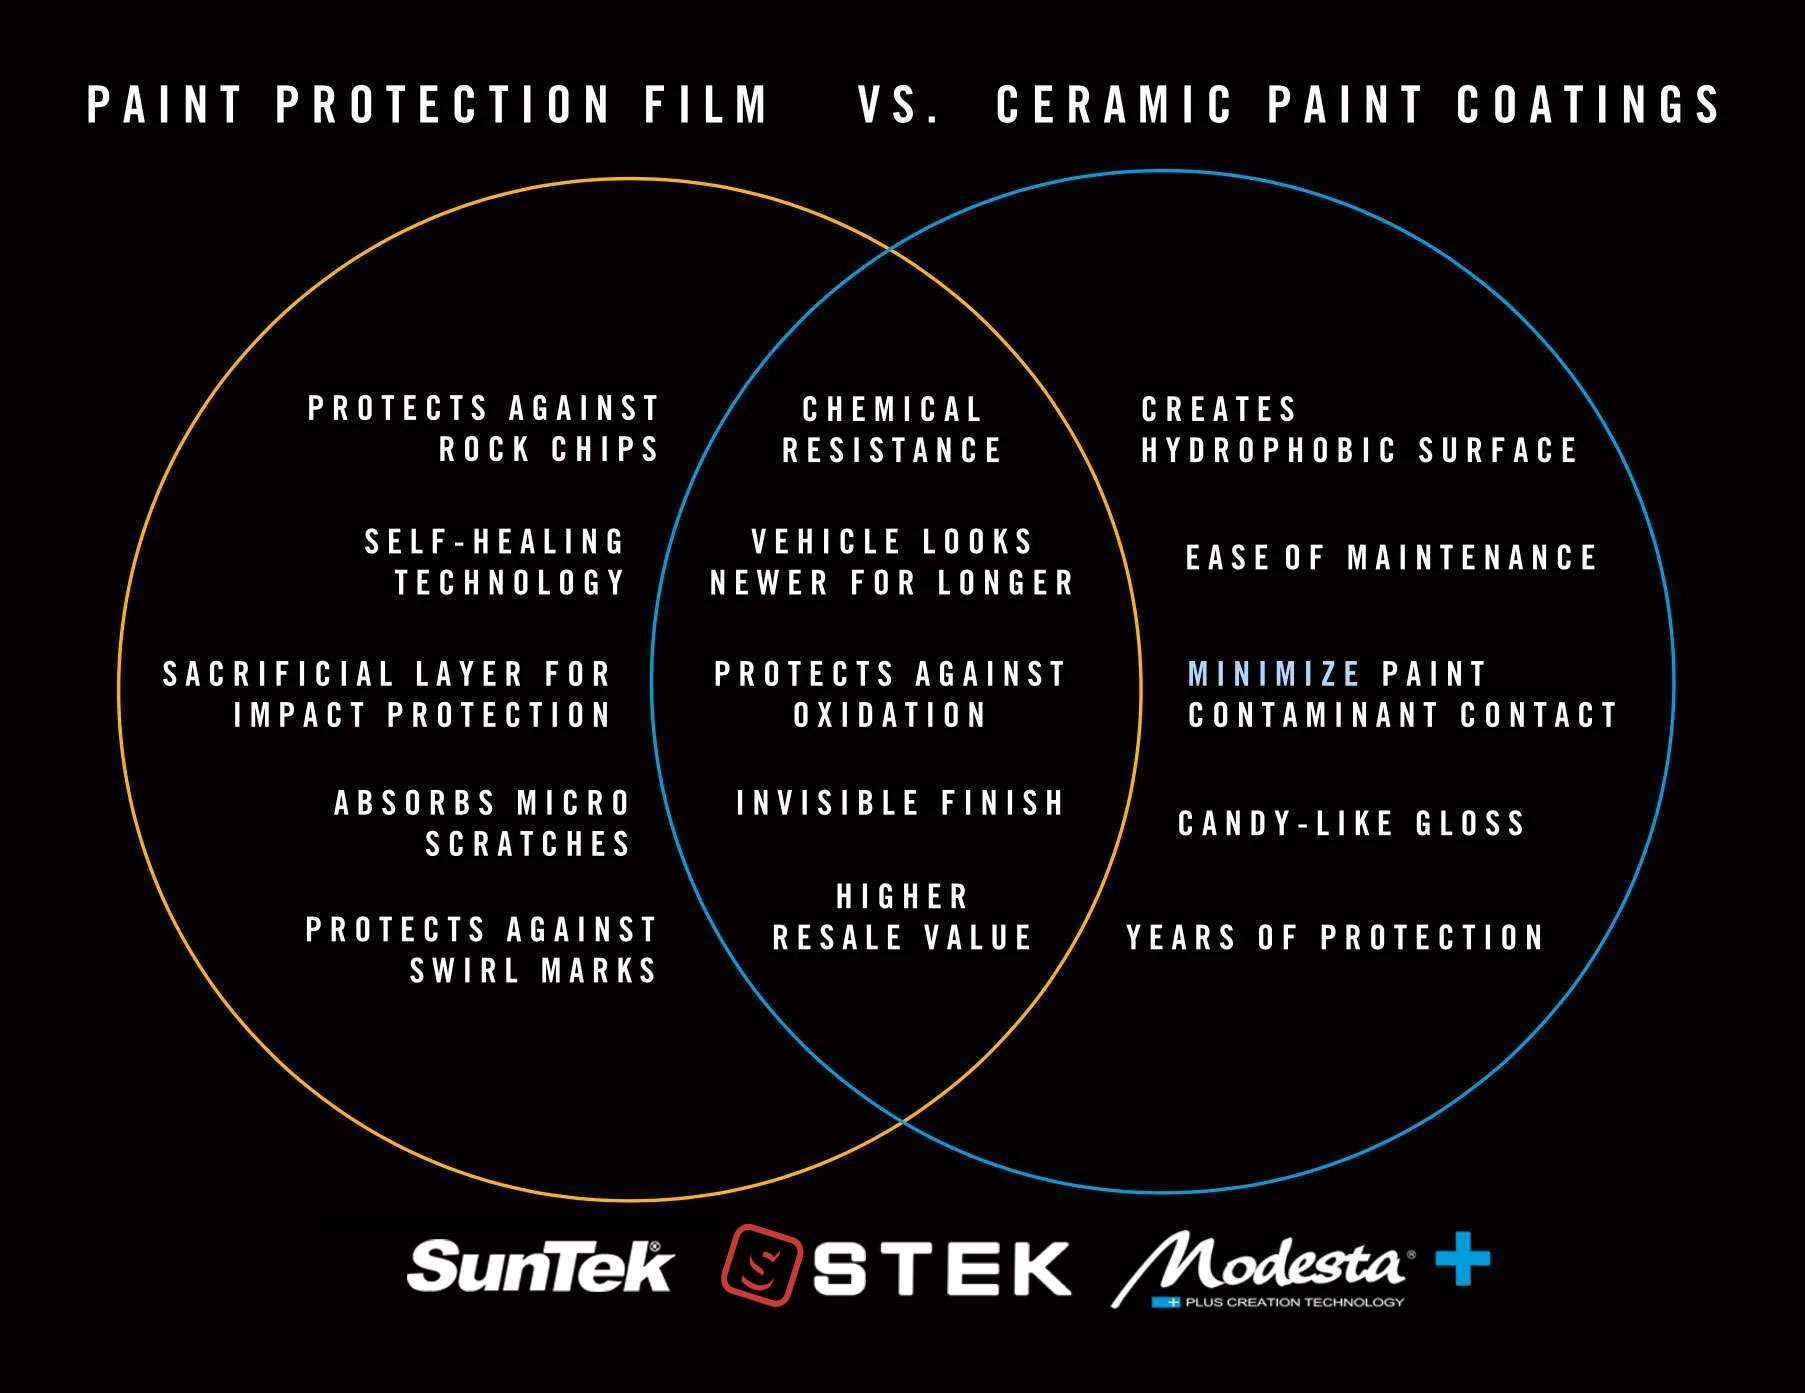 VennDiagram protection vs coating